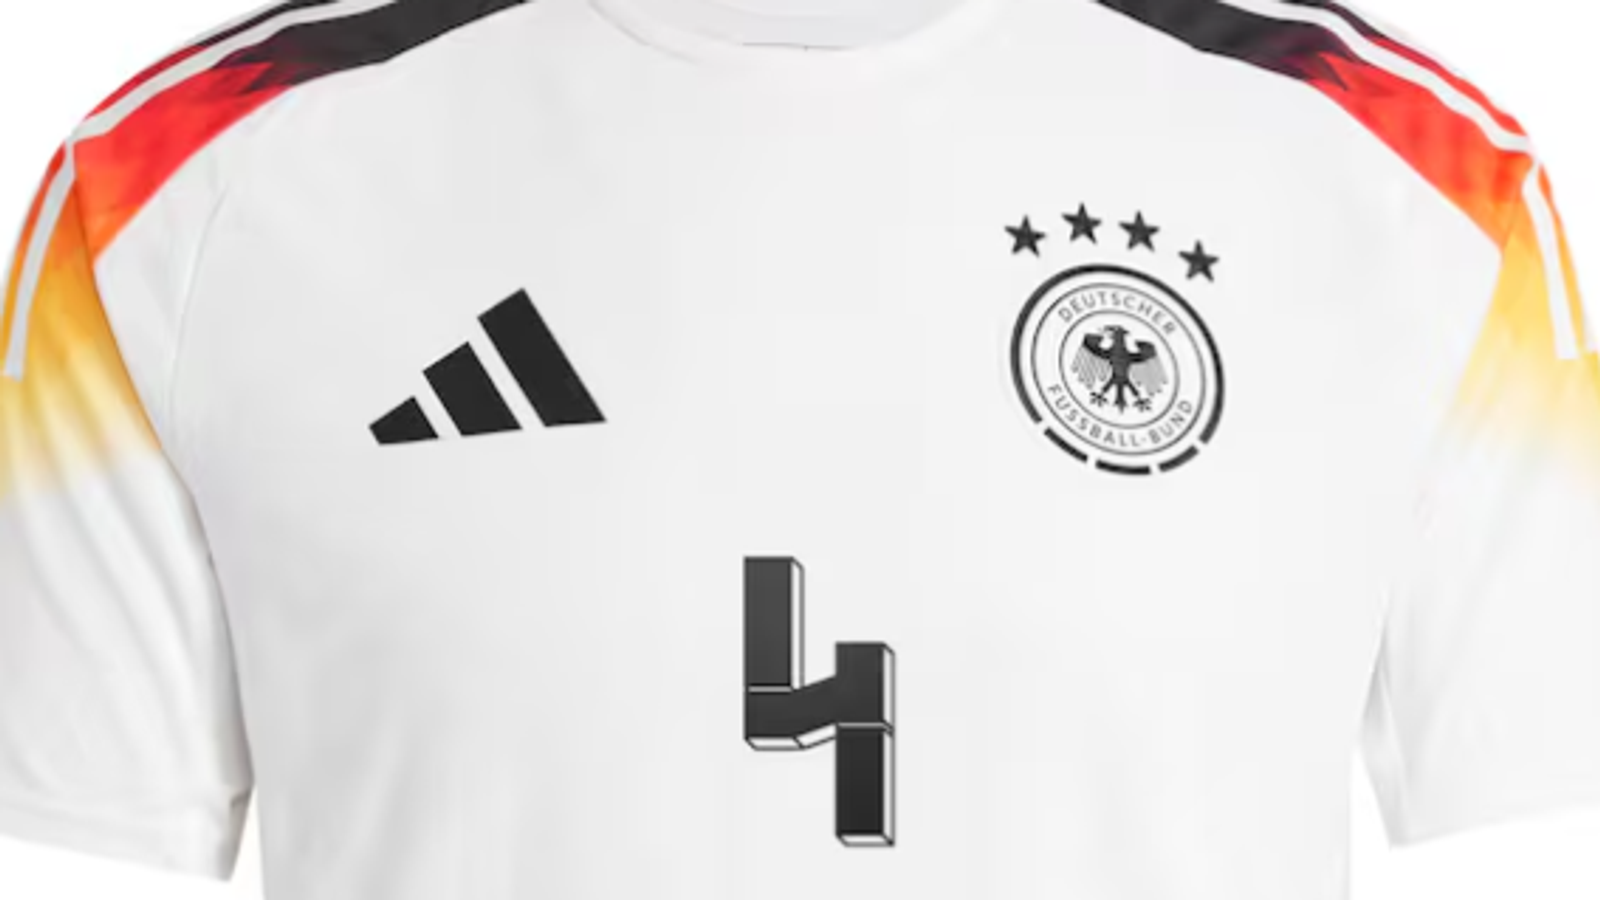 Adidas ще „блокира“ комплекти с номер 44 от Германия заради приликата с нацисткия символ „SS“